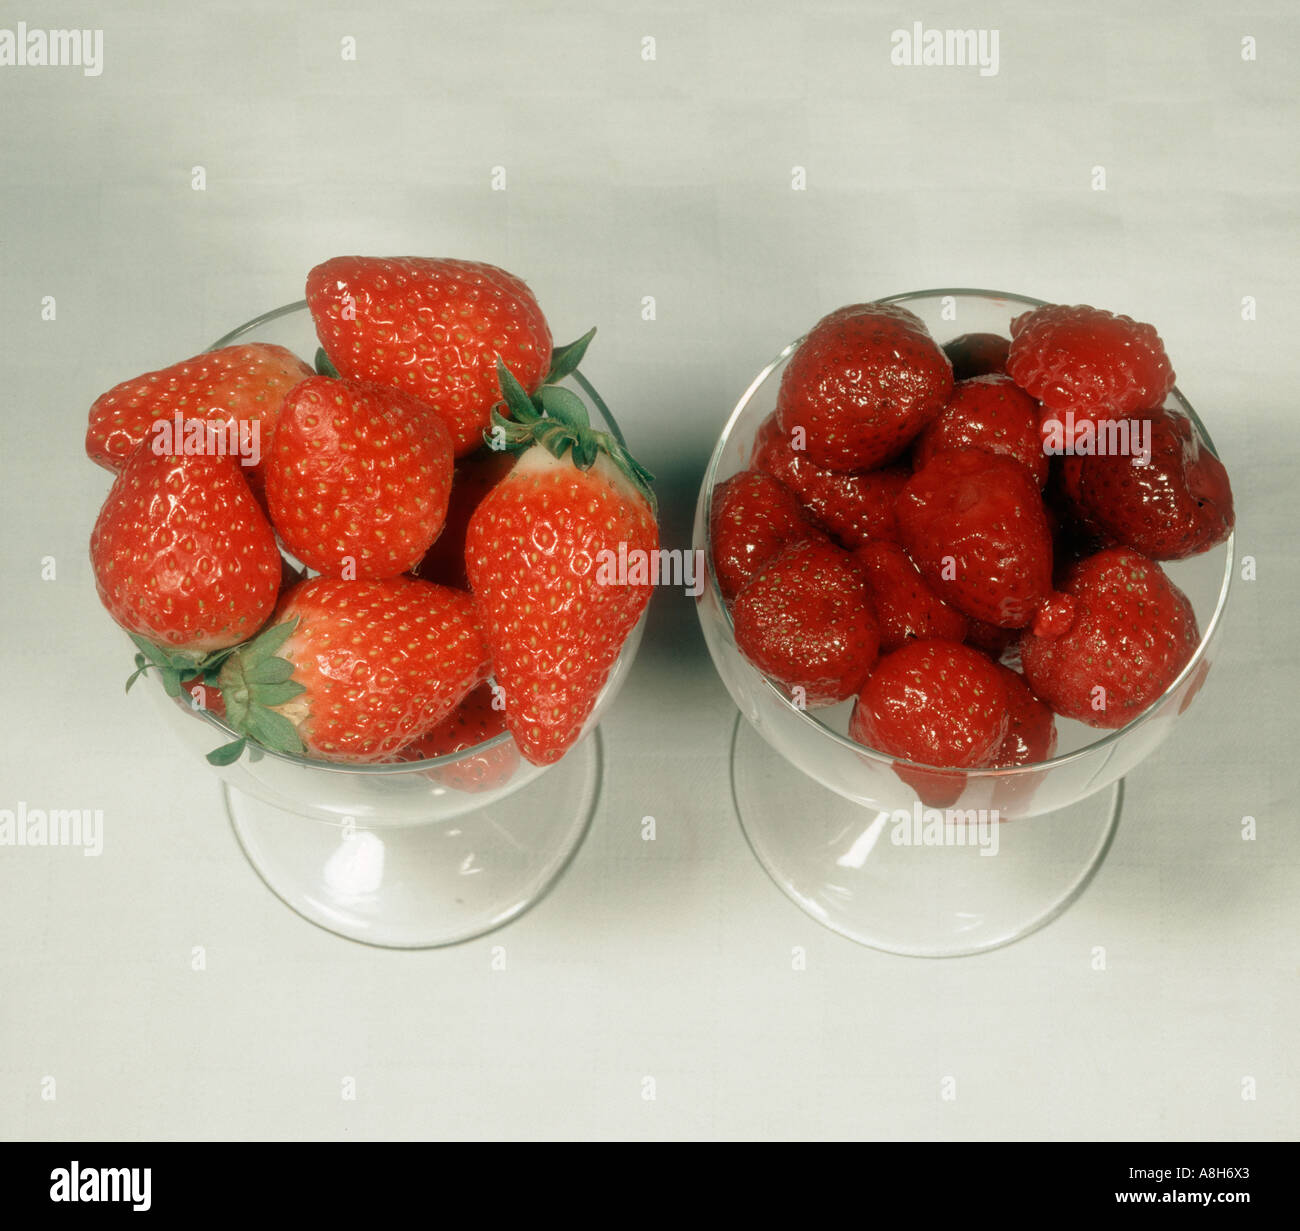 Vergleich von frischen Erdbeeren Früchte und gefrorenes Obst Stockfoto